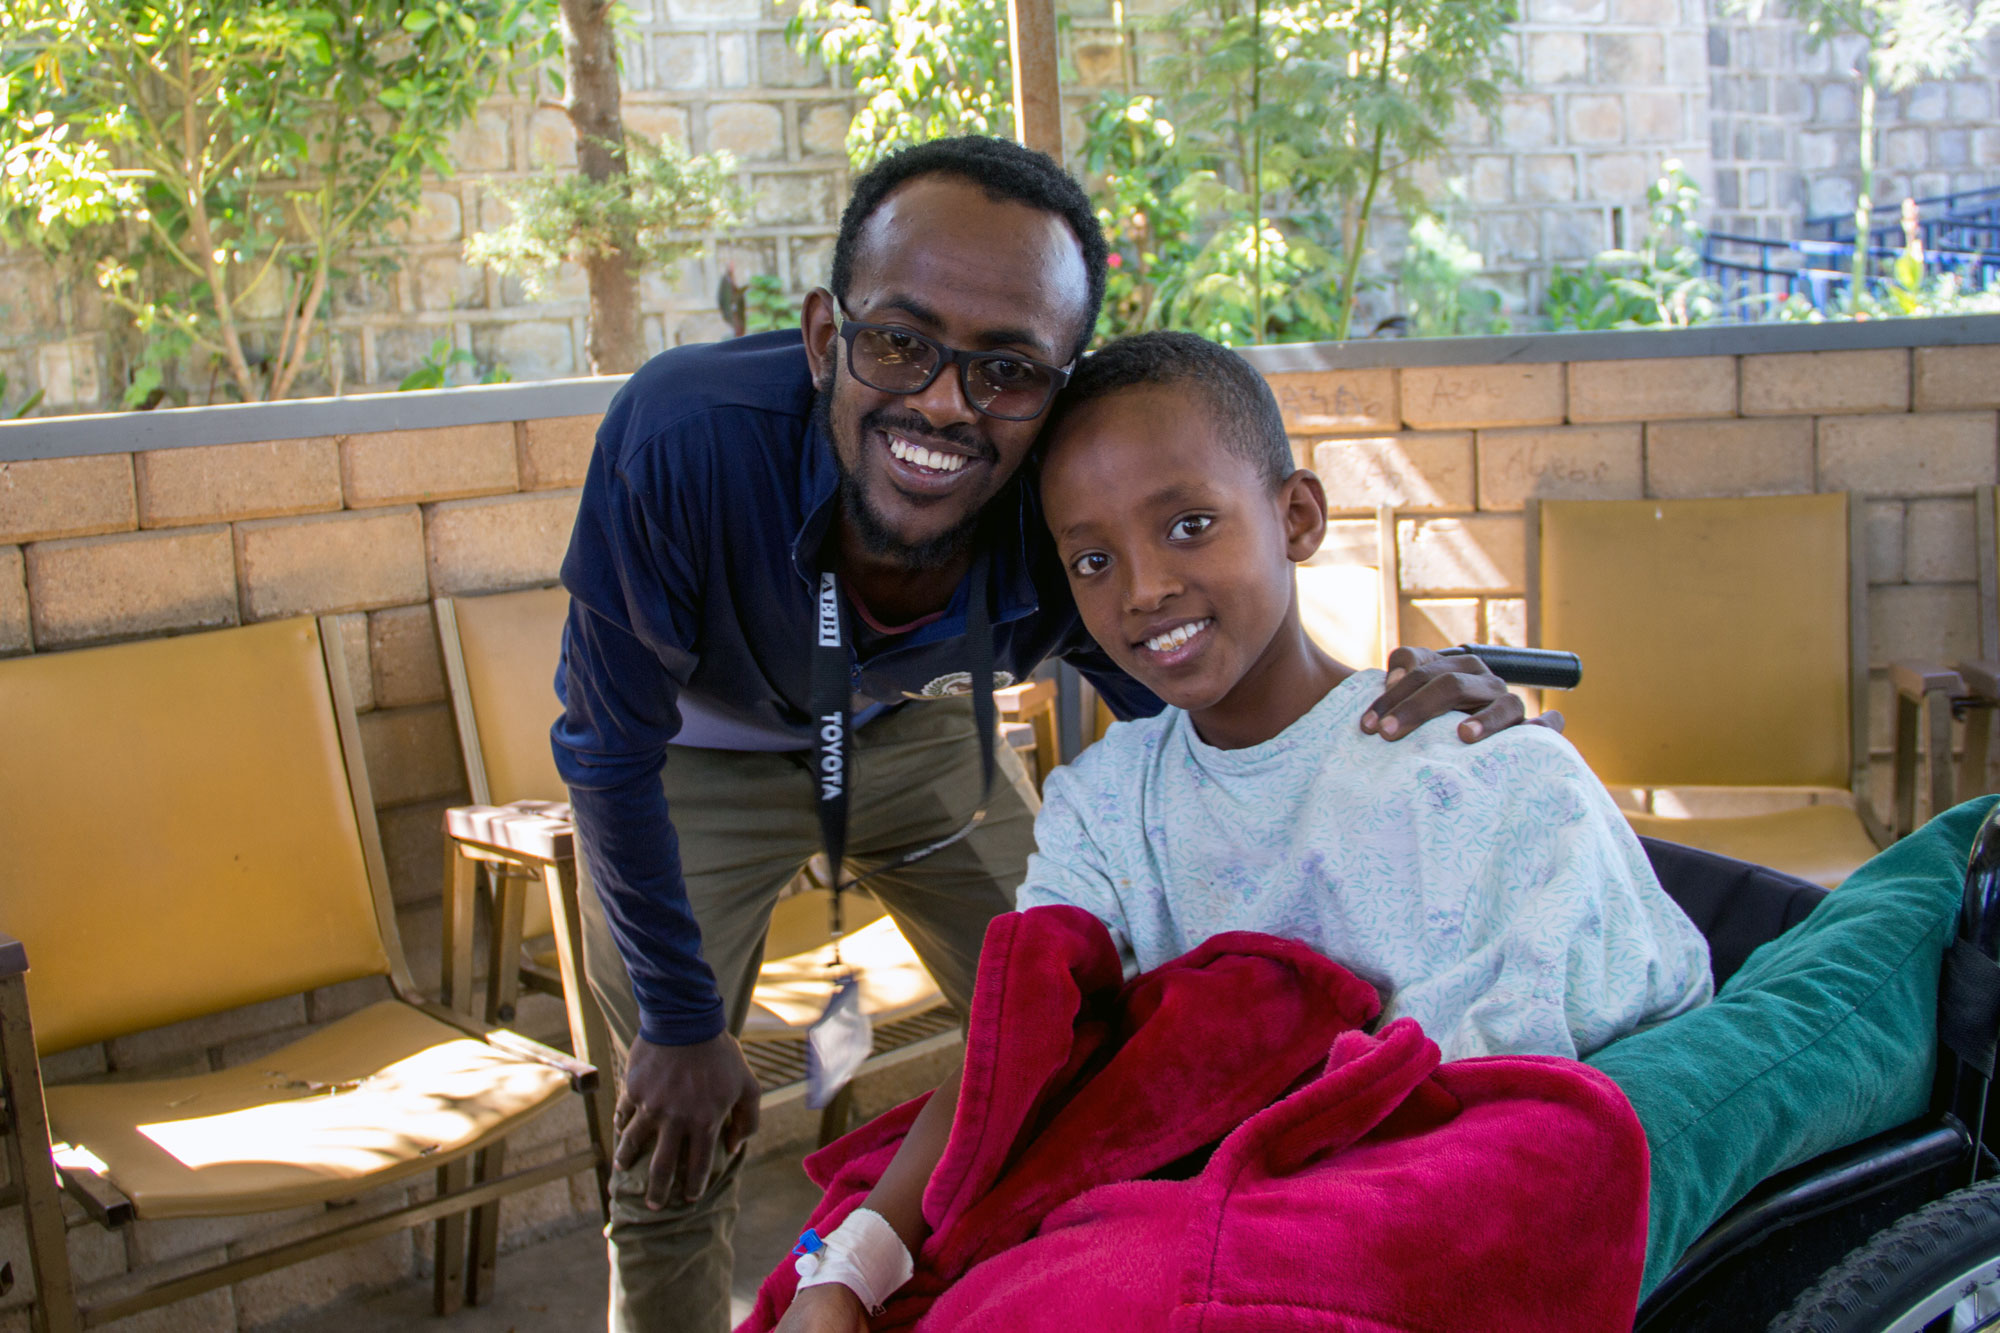 Building Self-Esteem in Ethiopia